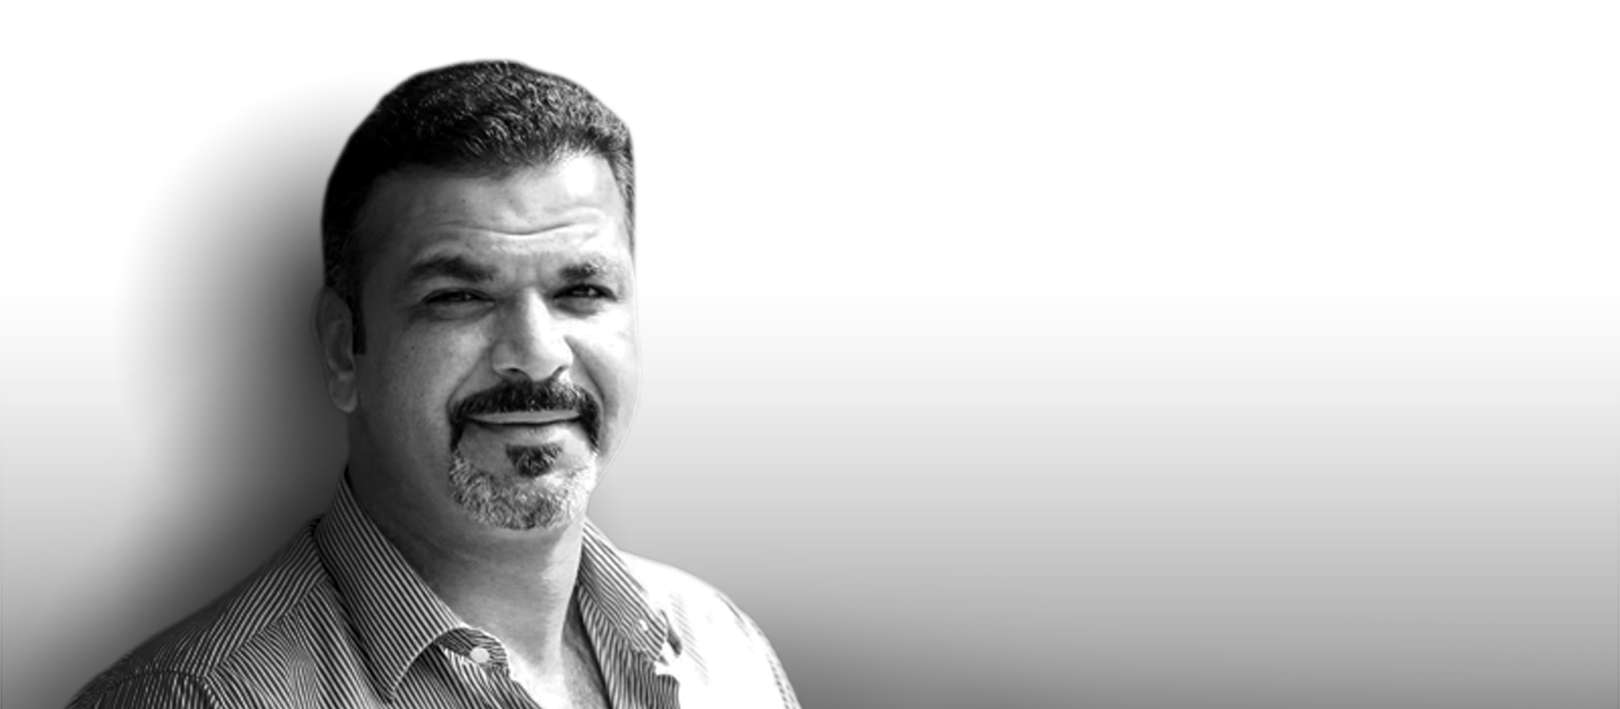 المخرج والممثل البحريني حسين الرفاعي